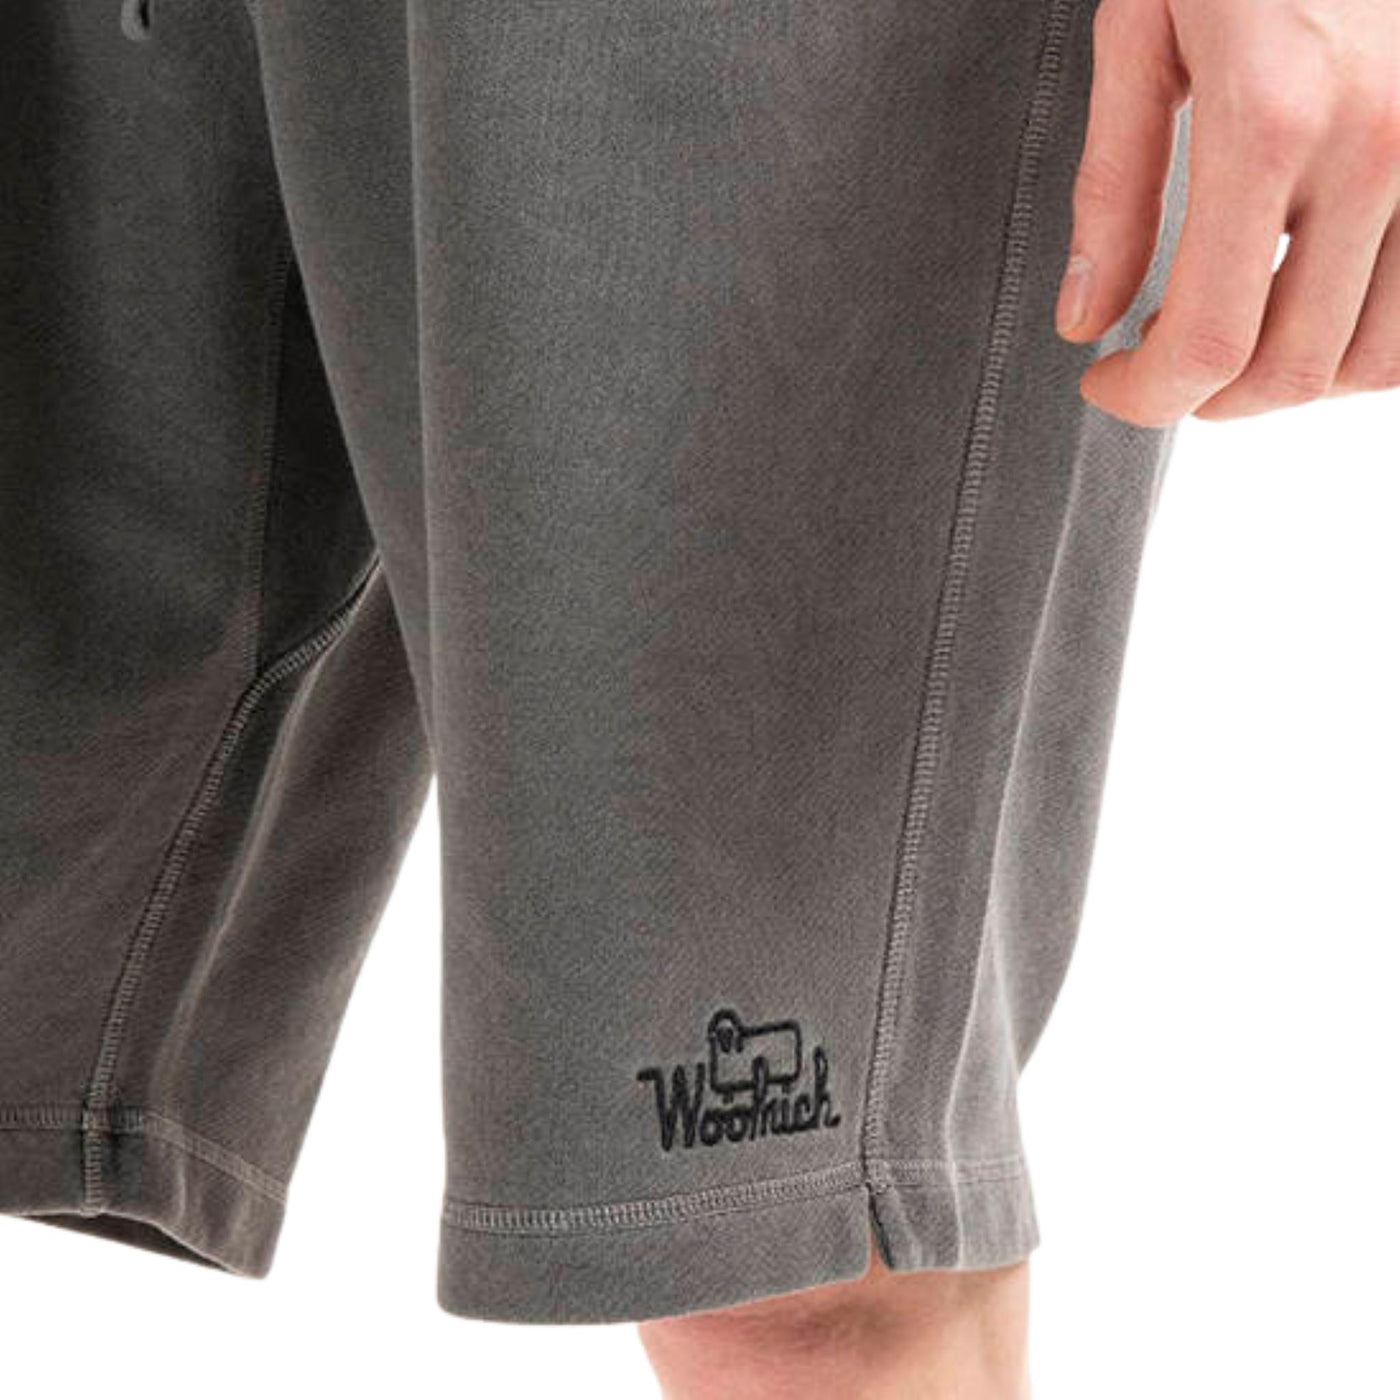 bermuda cargo woolrich in cotone felpato grigio logo